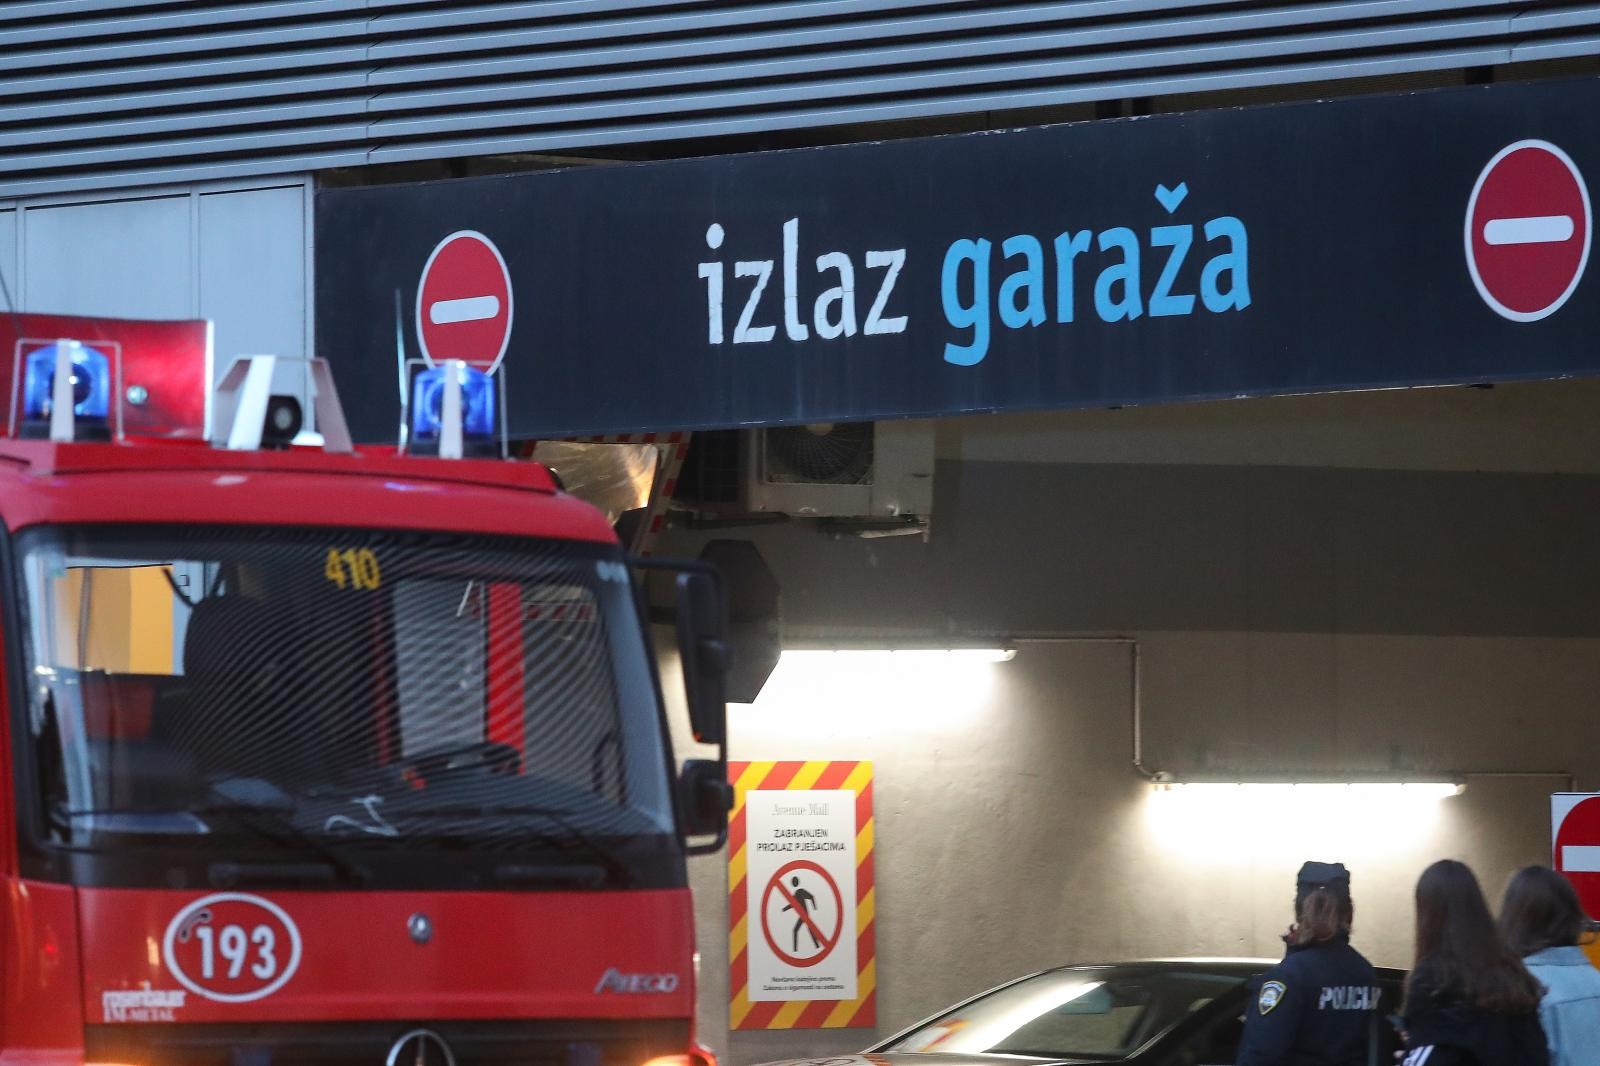 17.11.2019., Zagreb - U podzemnoj garazi trgovackog centra Avenue Mall zapalio se automobil. Zahvaljujući brzoj reakciji vatrogasaca, pozar je ugasem. 
Photo: Luka Stanzl/PIXSELL